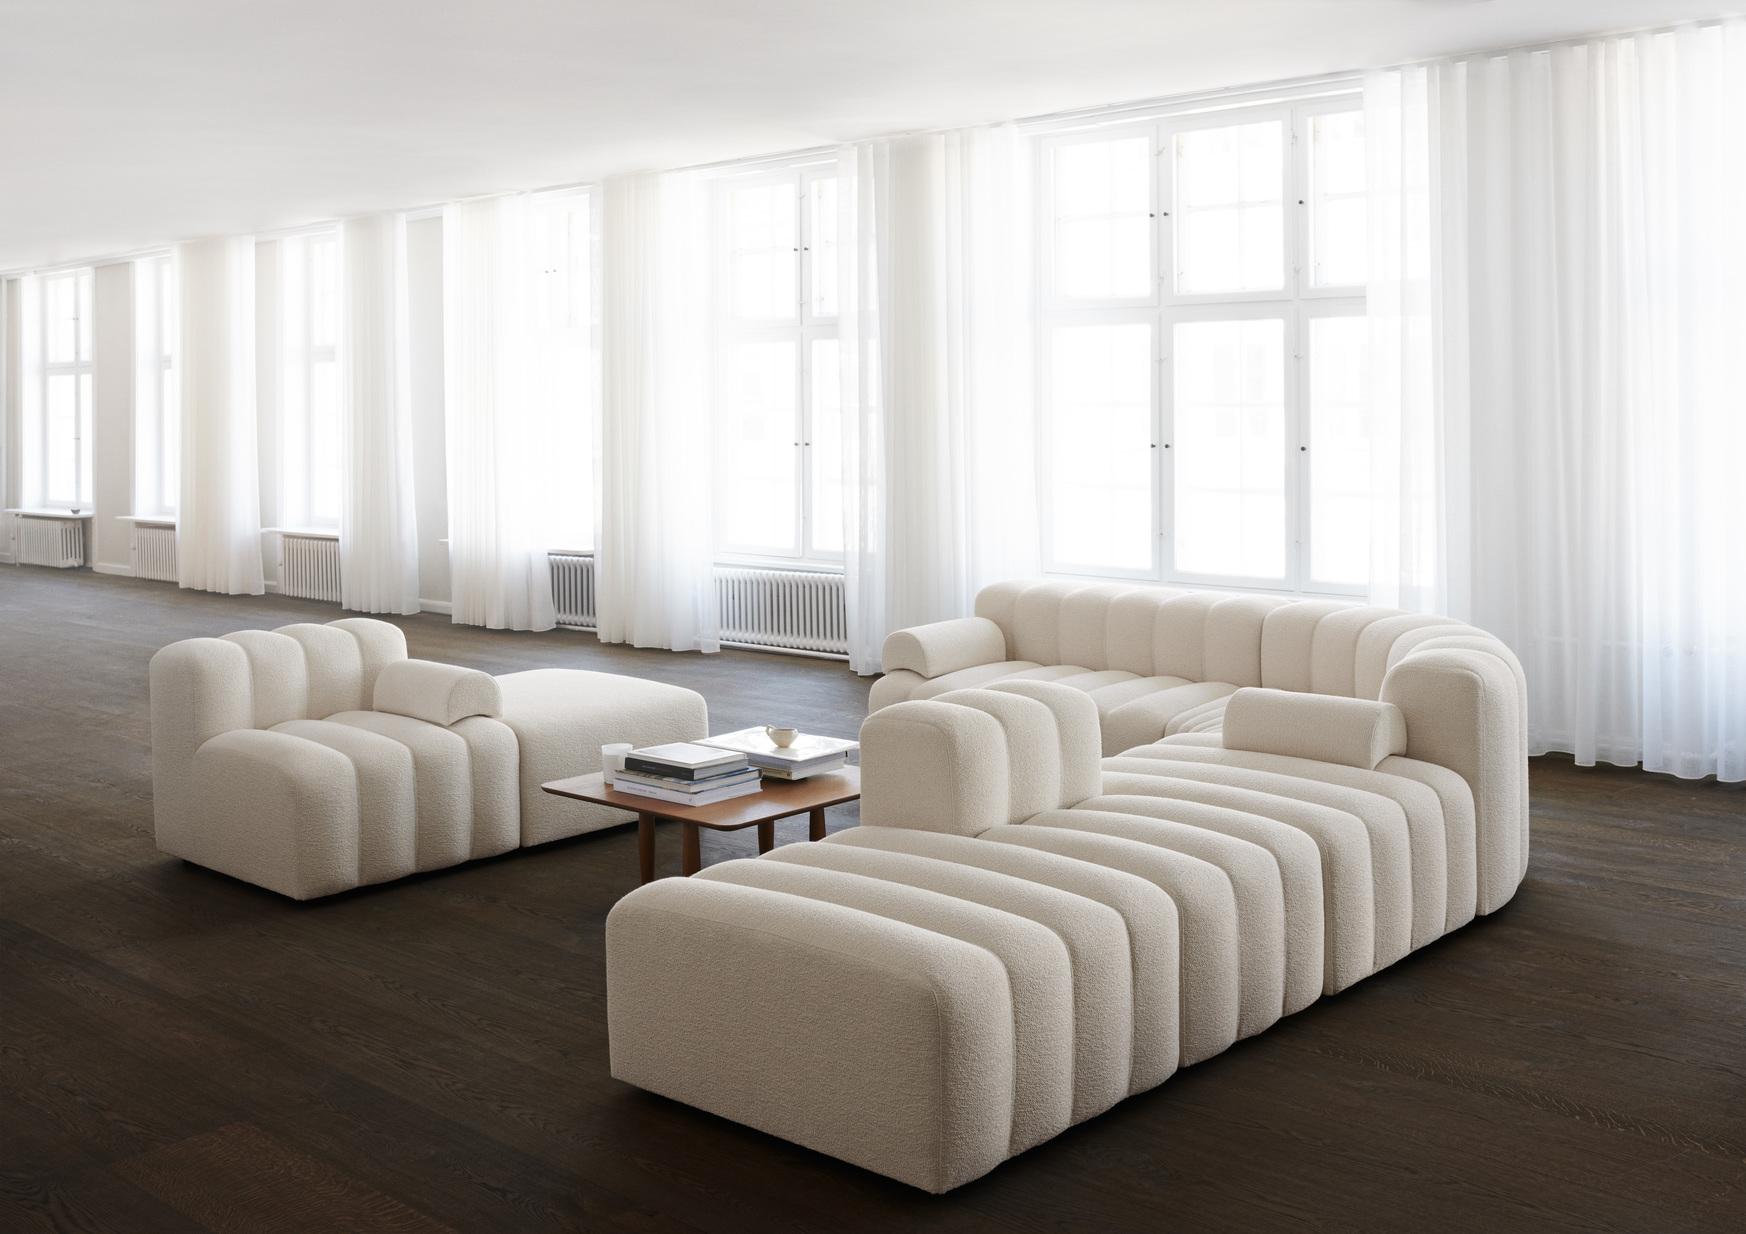 STUDIO sofa von Kristian Sofus Hansen & Tommy Hyldahl für Nor11

Maße: Aufbau 1 (2x Medium, 1x Ottomane, 1x Armlehne):
L. 240 cm / B. 96 cm / H. 70 cm / Sitzfläche H. 42cm

Modulares Sofa: stellen Sie verschiedene Module zusammen, um Ihre